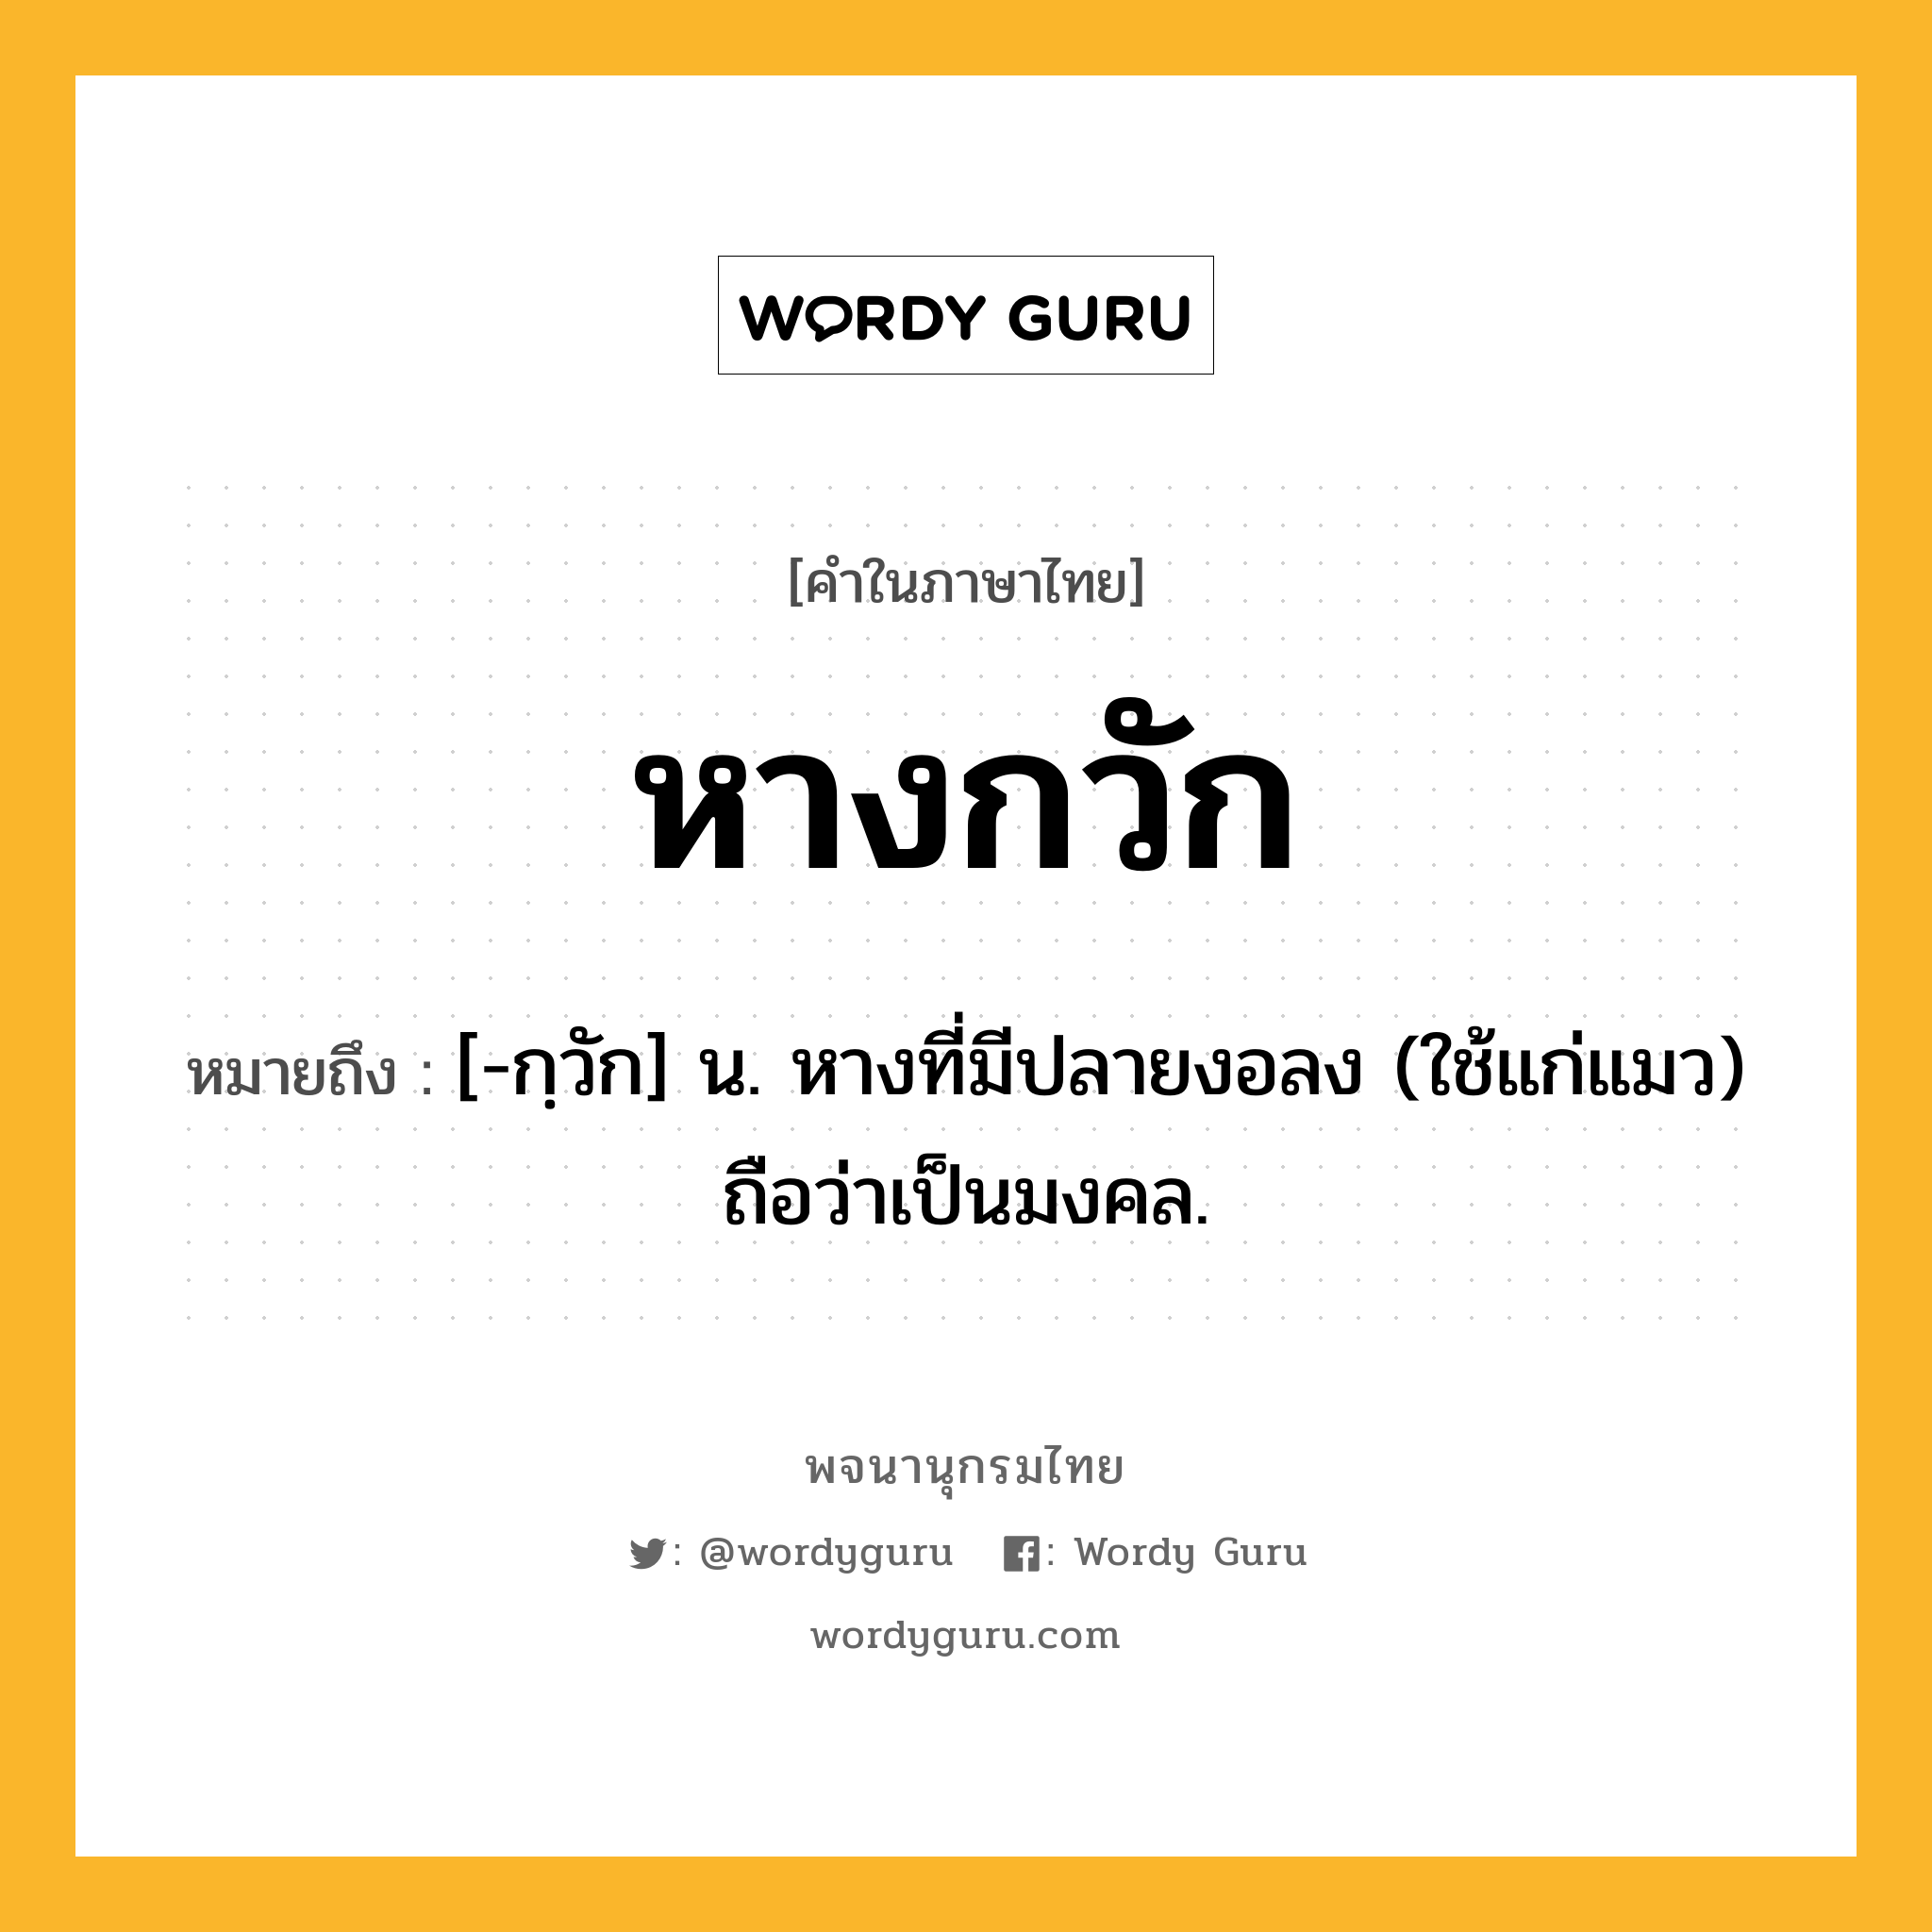 หางกวัก หมายถึงอะไร?, คำในภาษาไทย หางกวัก หมายถึง [-กฺวัก] น. หางที่มีปลายงอลง (ใช้แก่แมว) ถือว่าเป็นมงคล.